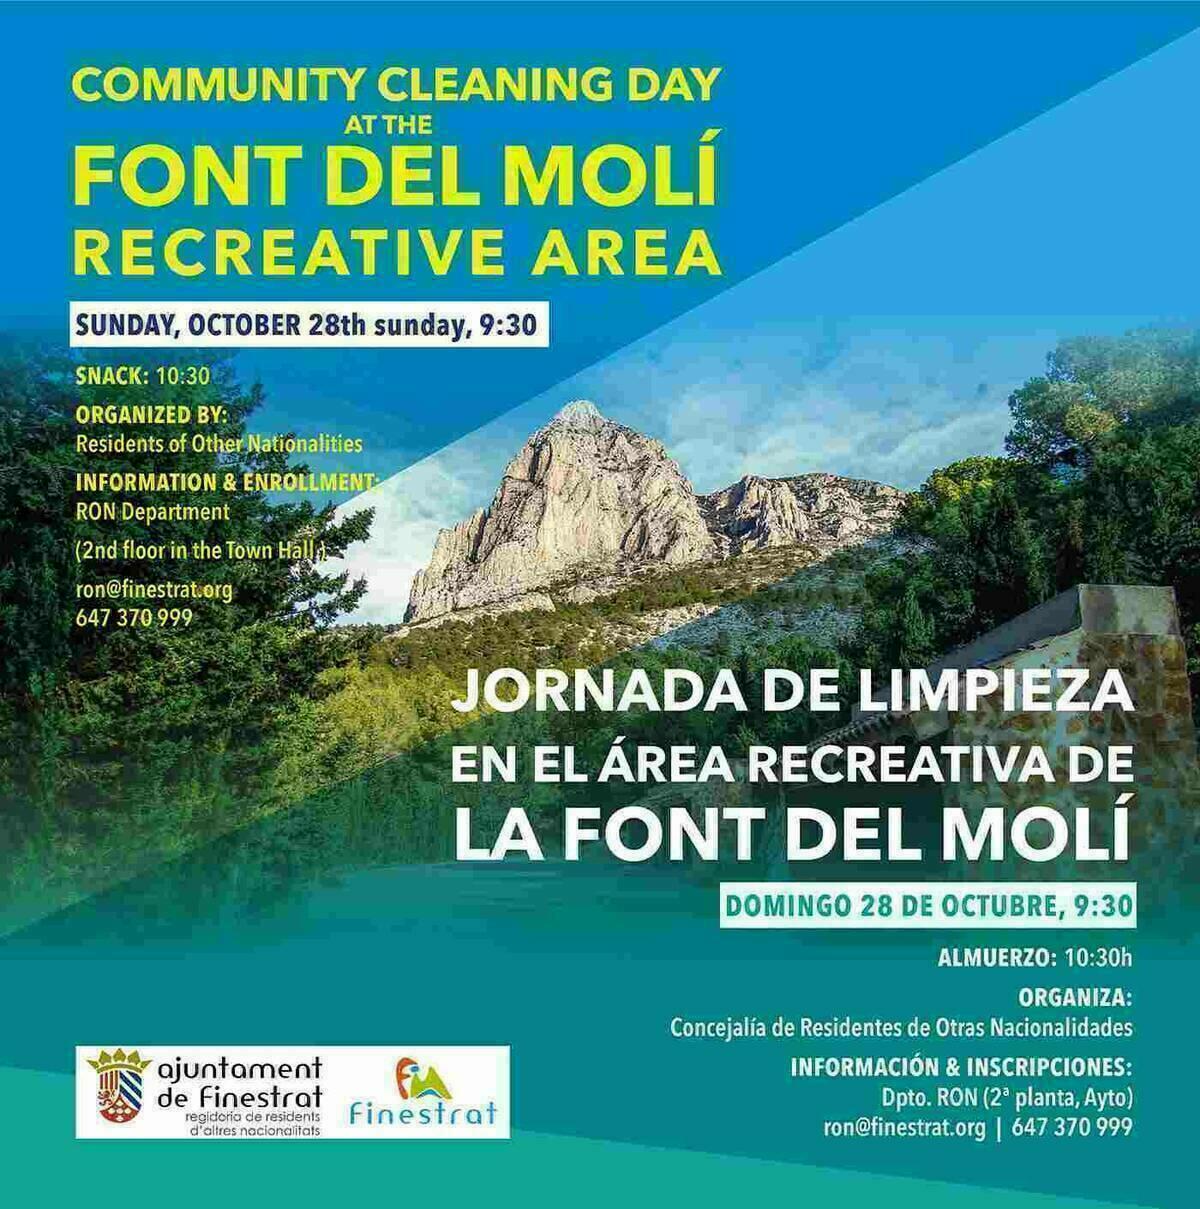 Finestrat organiza  una jornada de limpieza medioambiental en el área recreativa de la font del molí para el domingo 28 